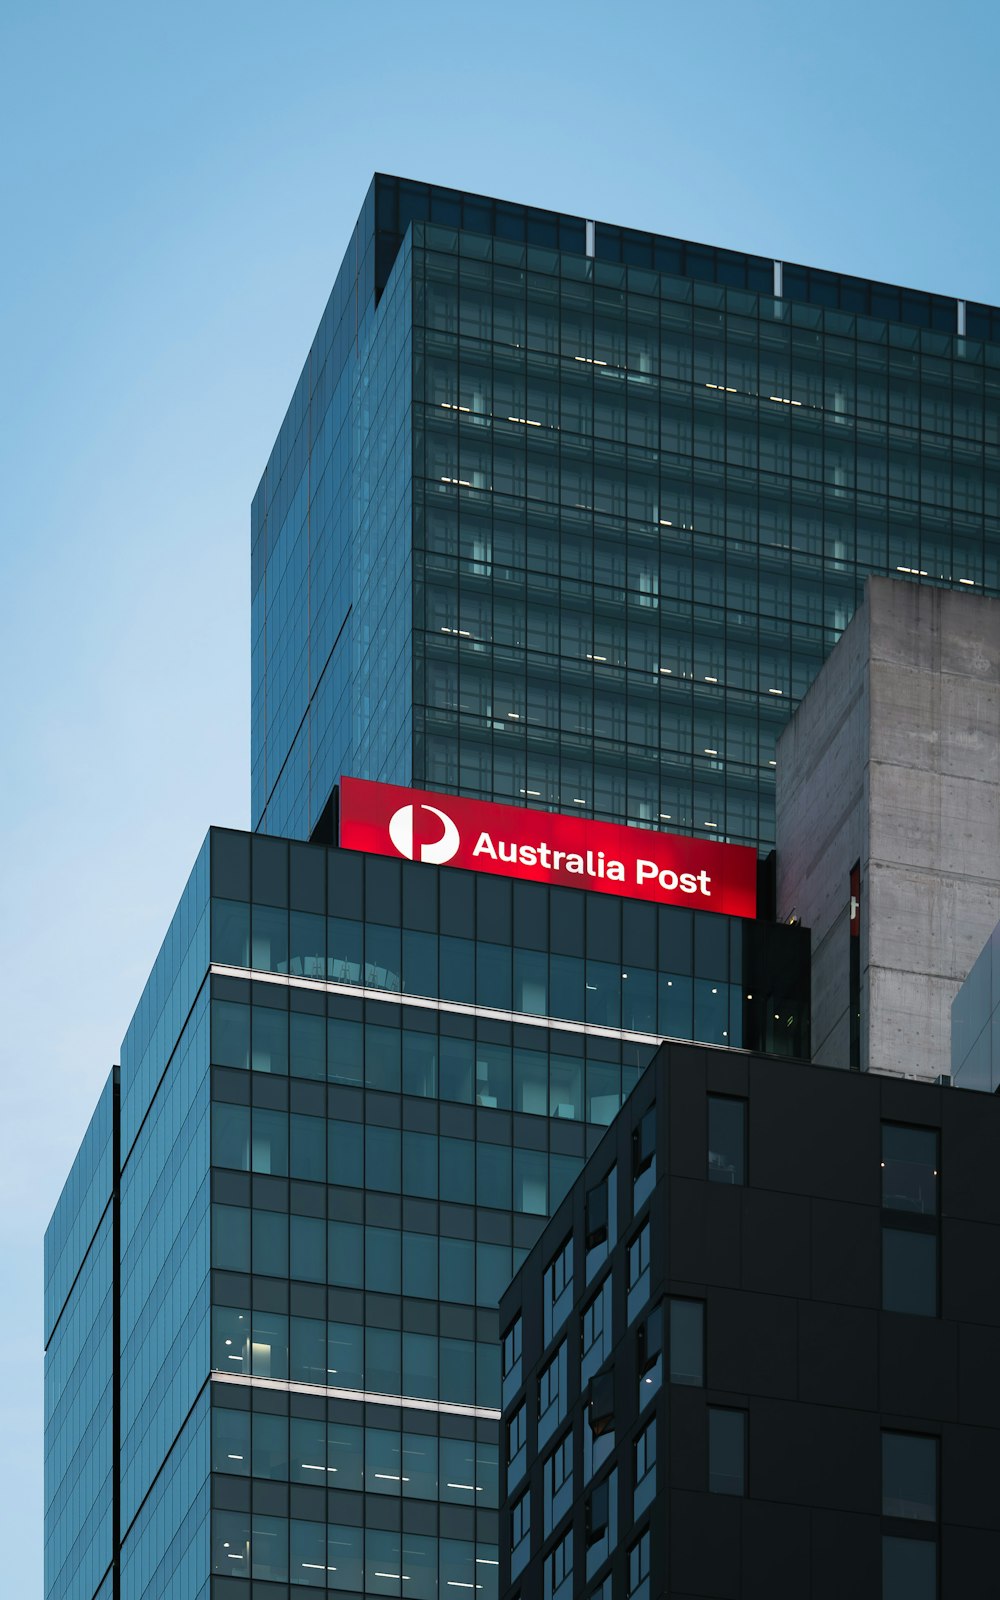 Ein rotes Schild der Australia Post auf dem Dach eines hohen Gebäudes